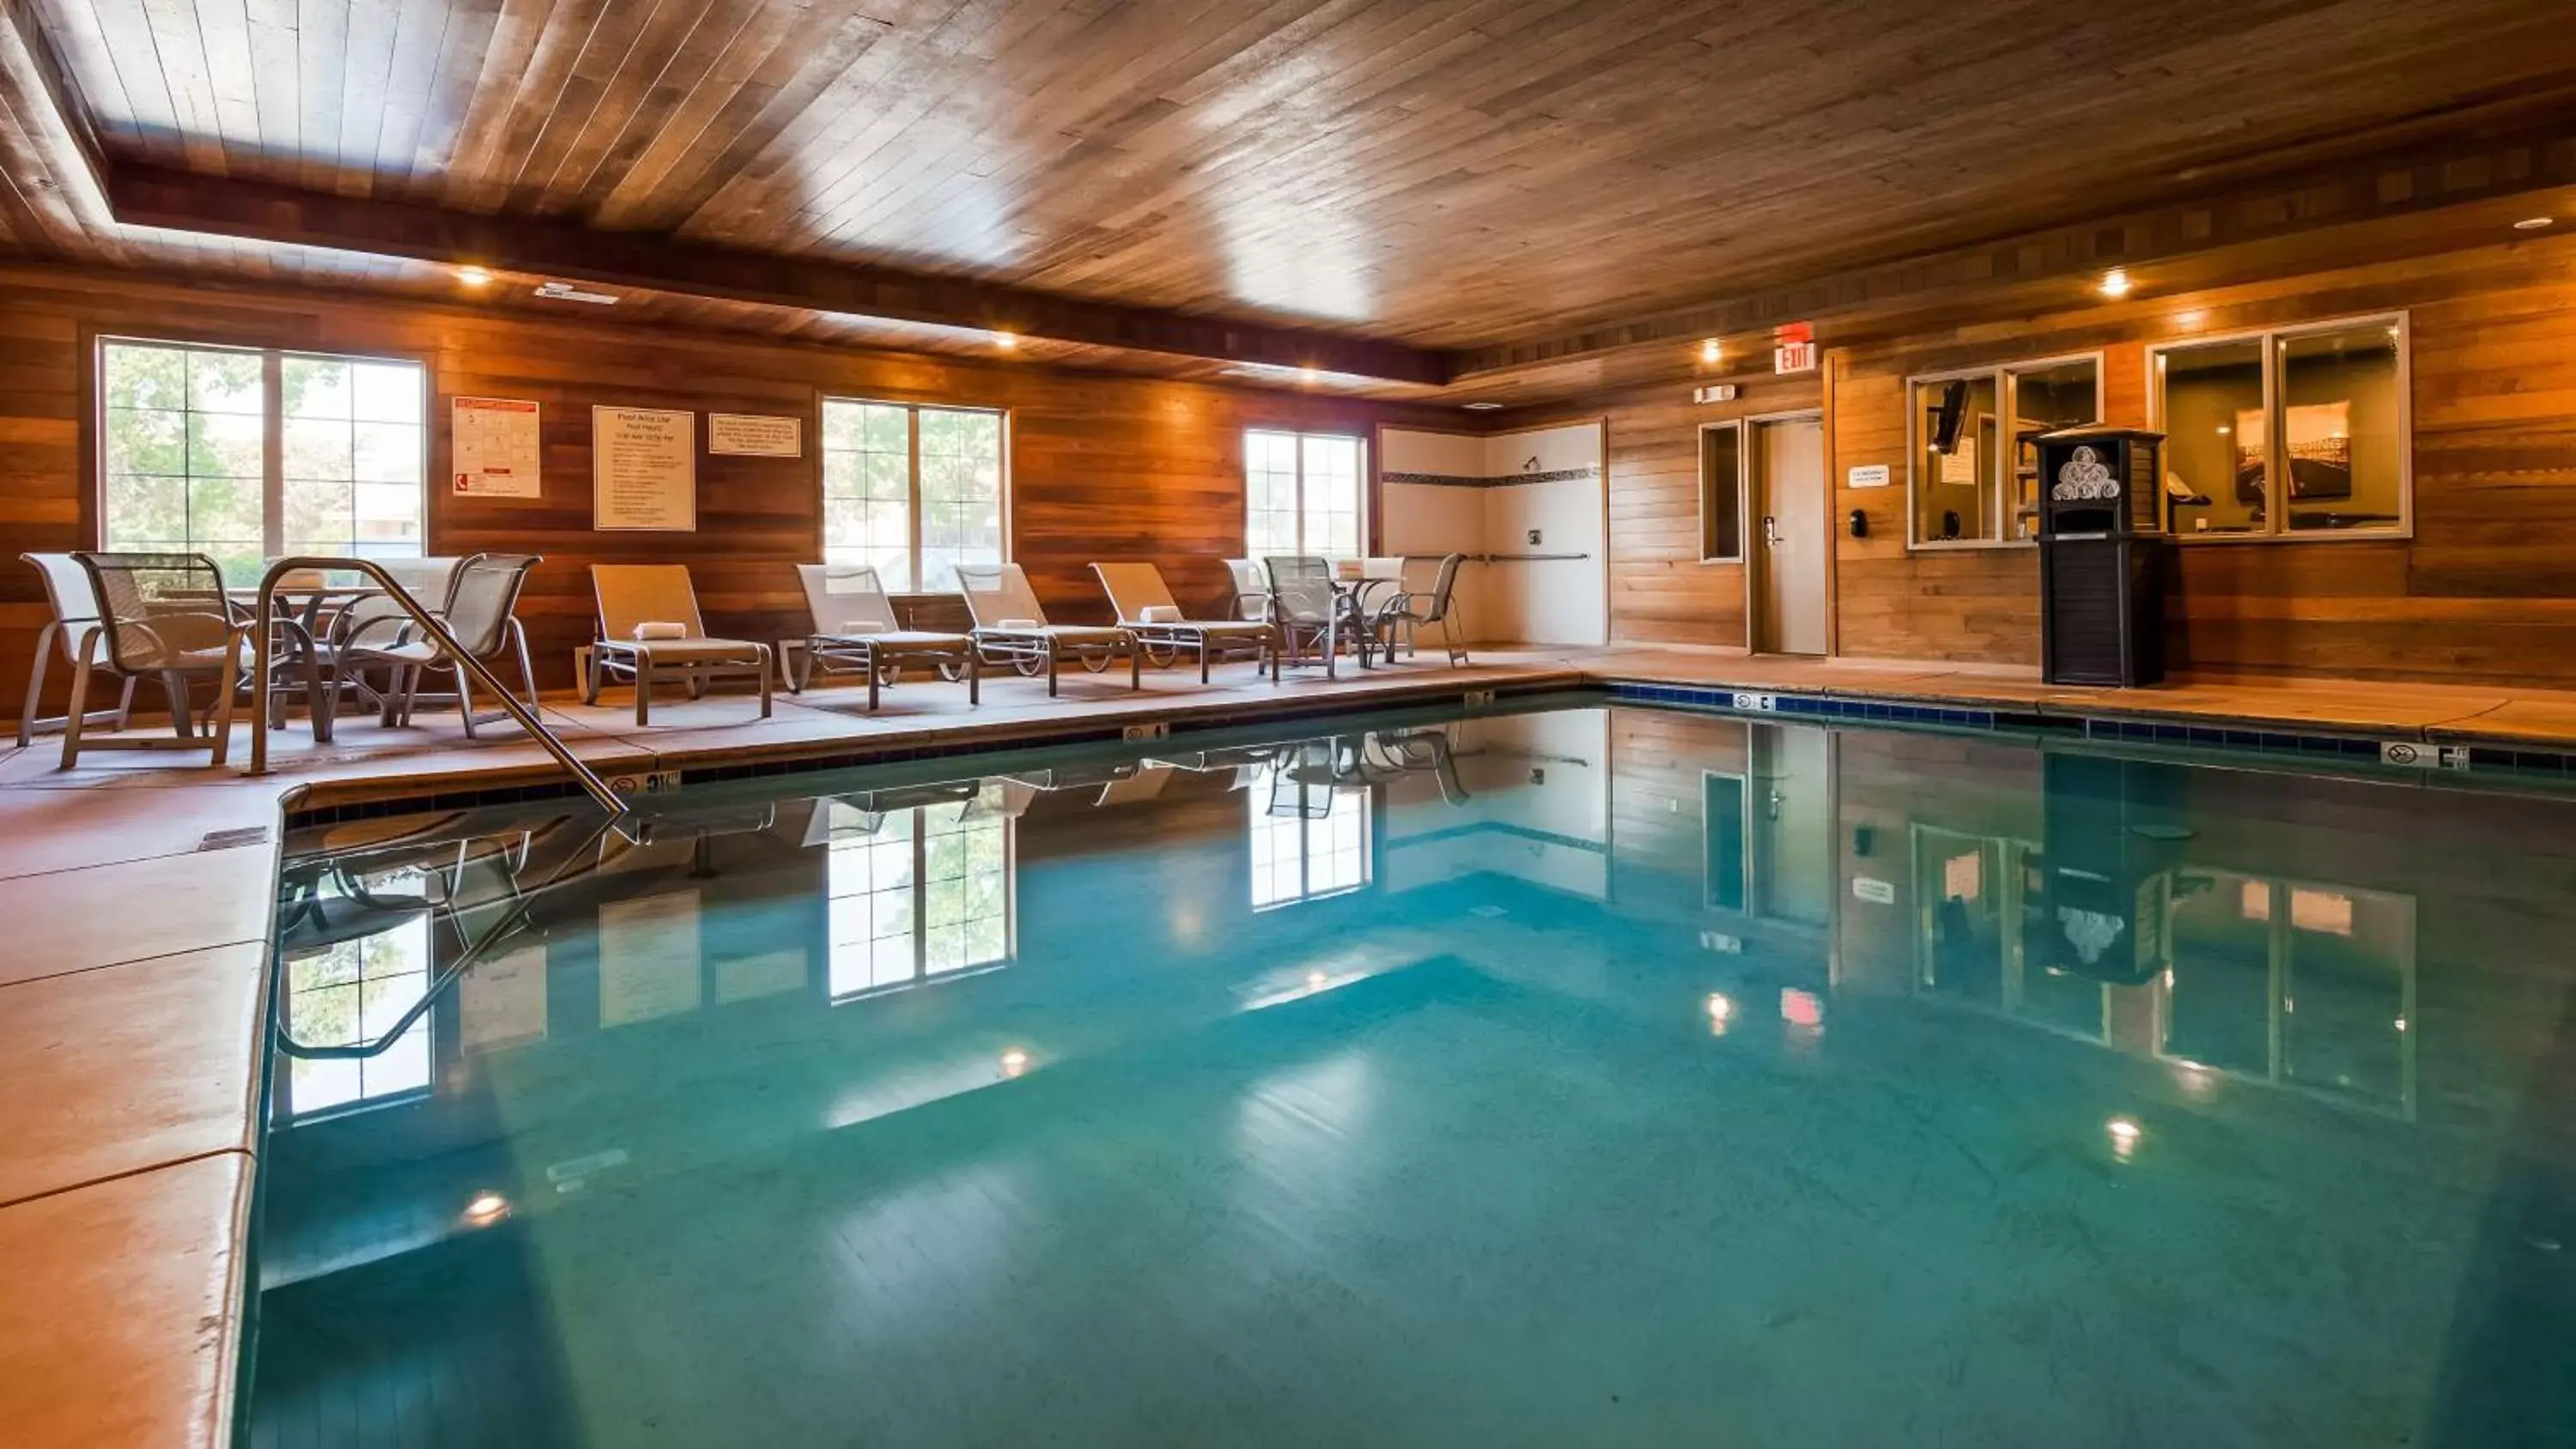 On site, Swimming Pool in Best Western Plus Rama Inn & Suites